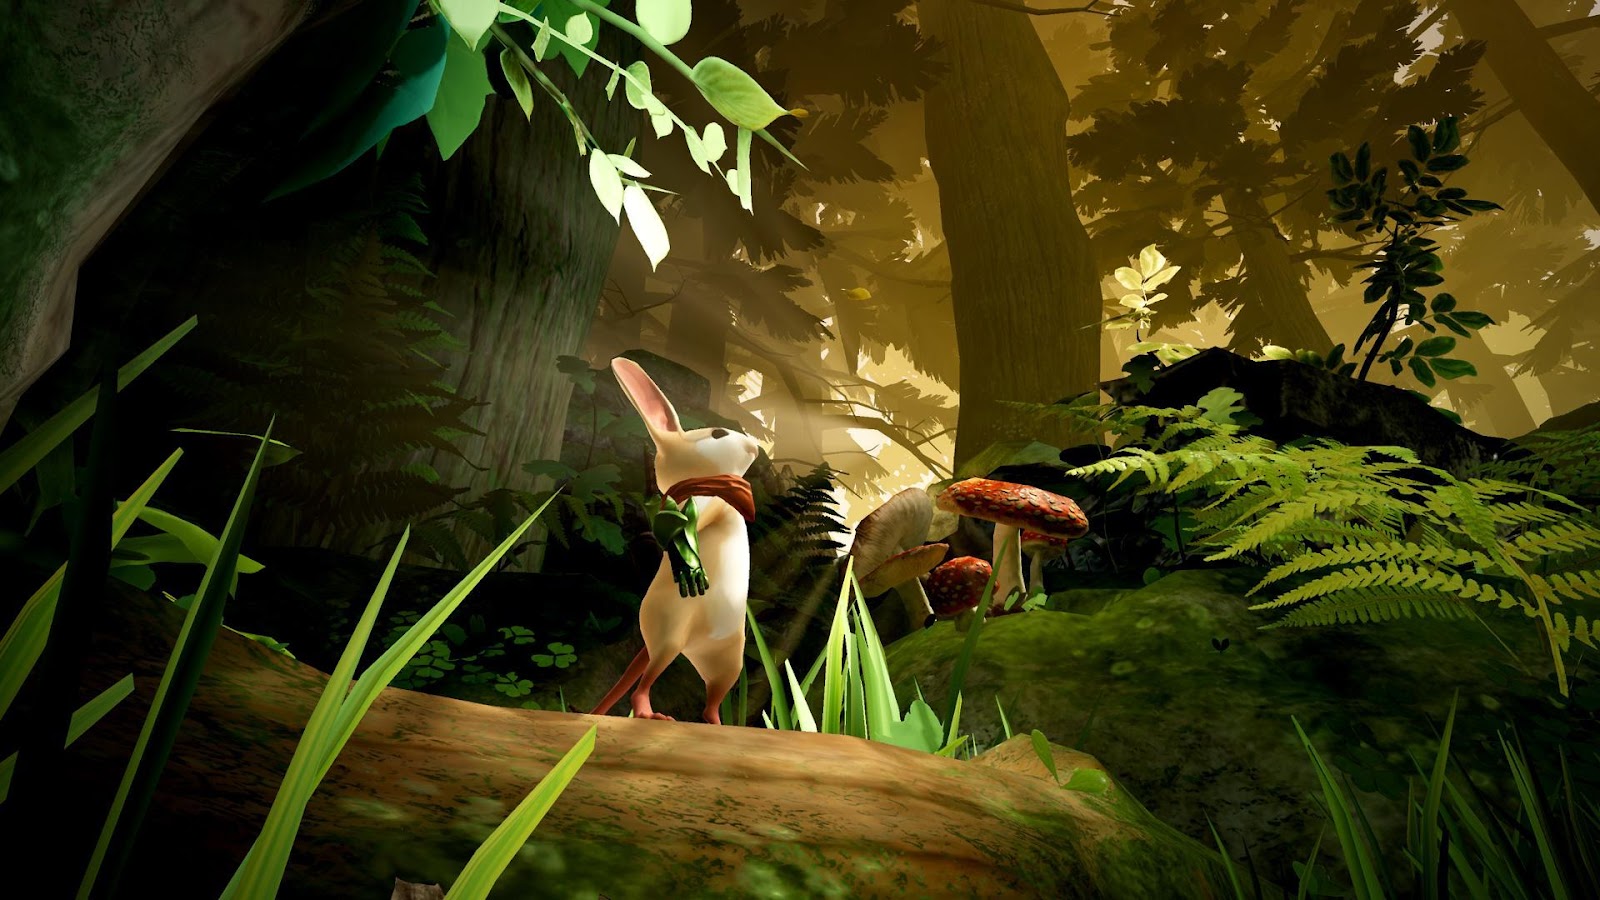 सर्वोत्कृष्ट PS VR गेम: उंदीर वरील जंगलाकडे पाहत असलेल्या लॉगवर उभा आहे